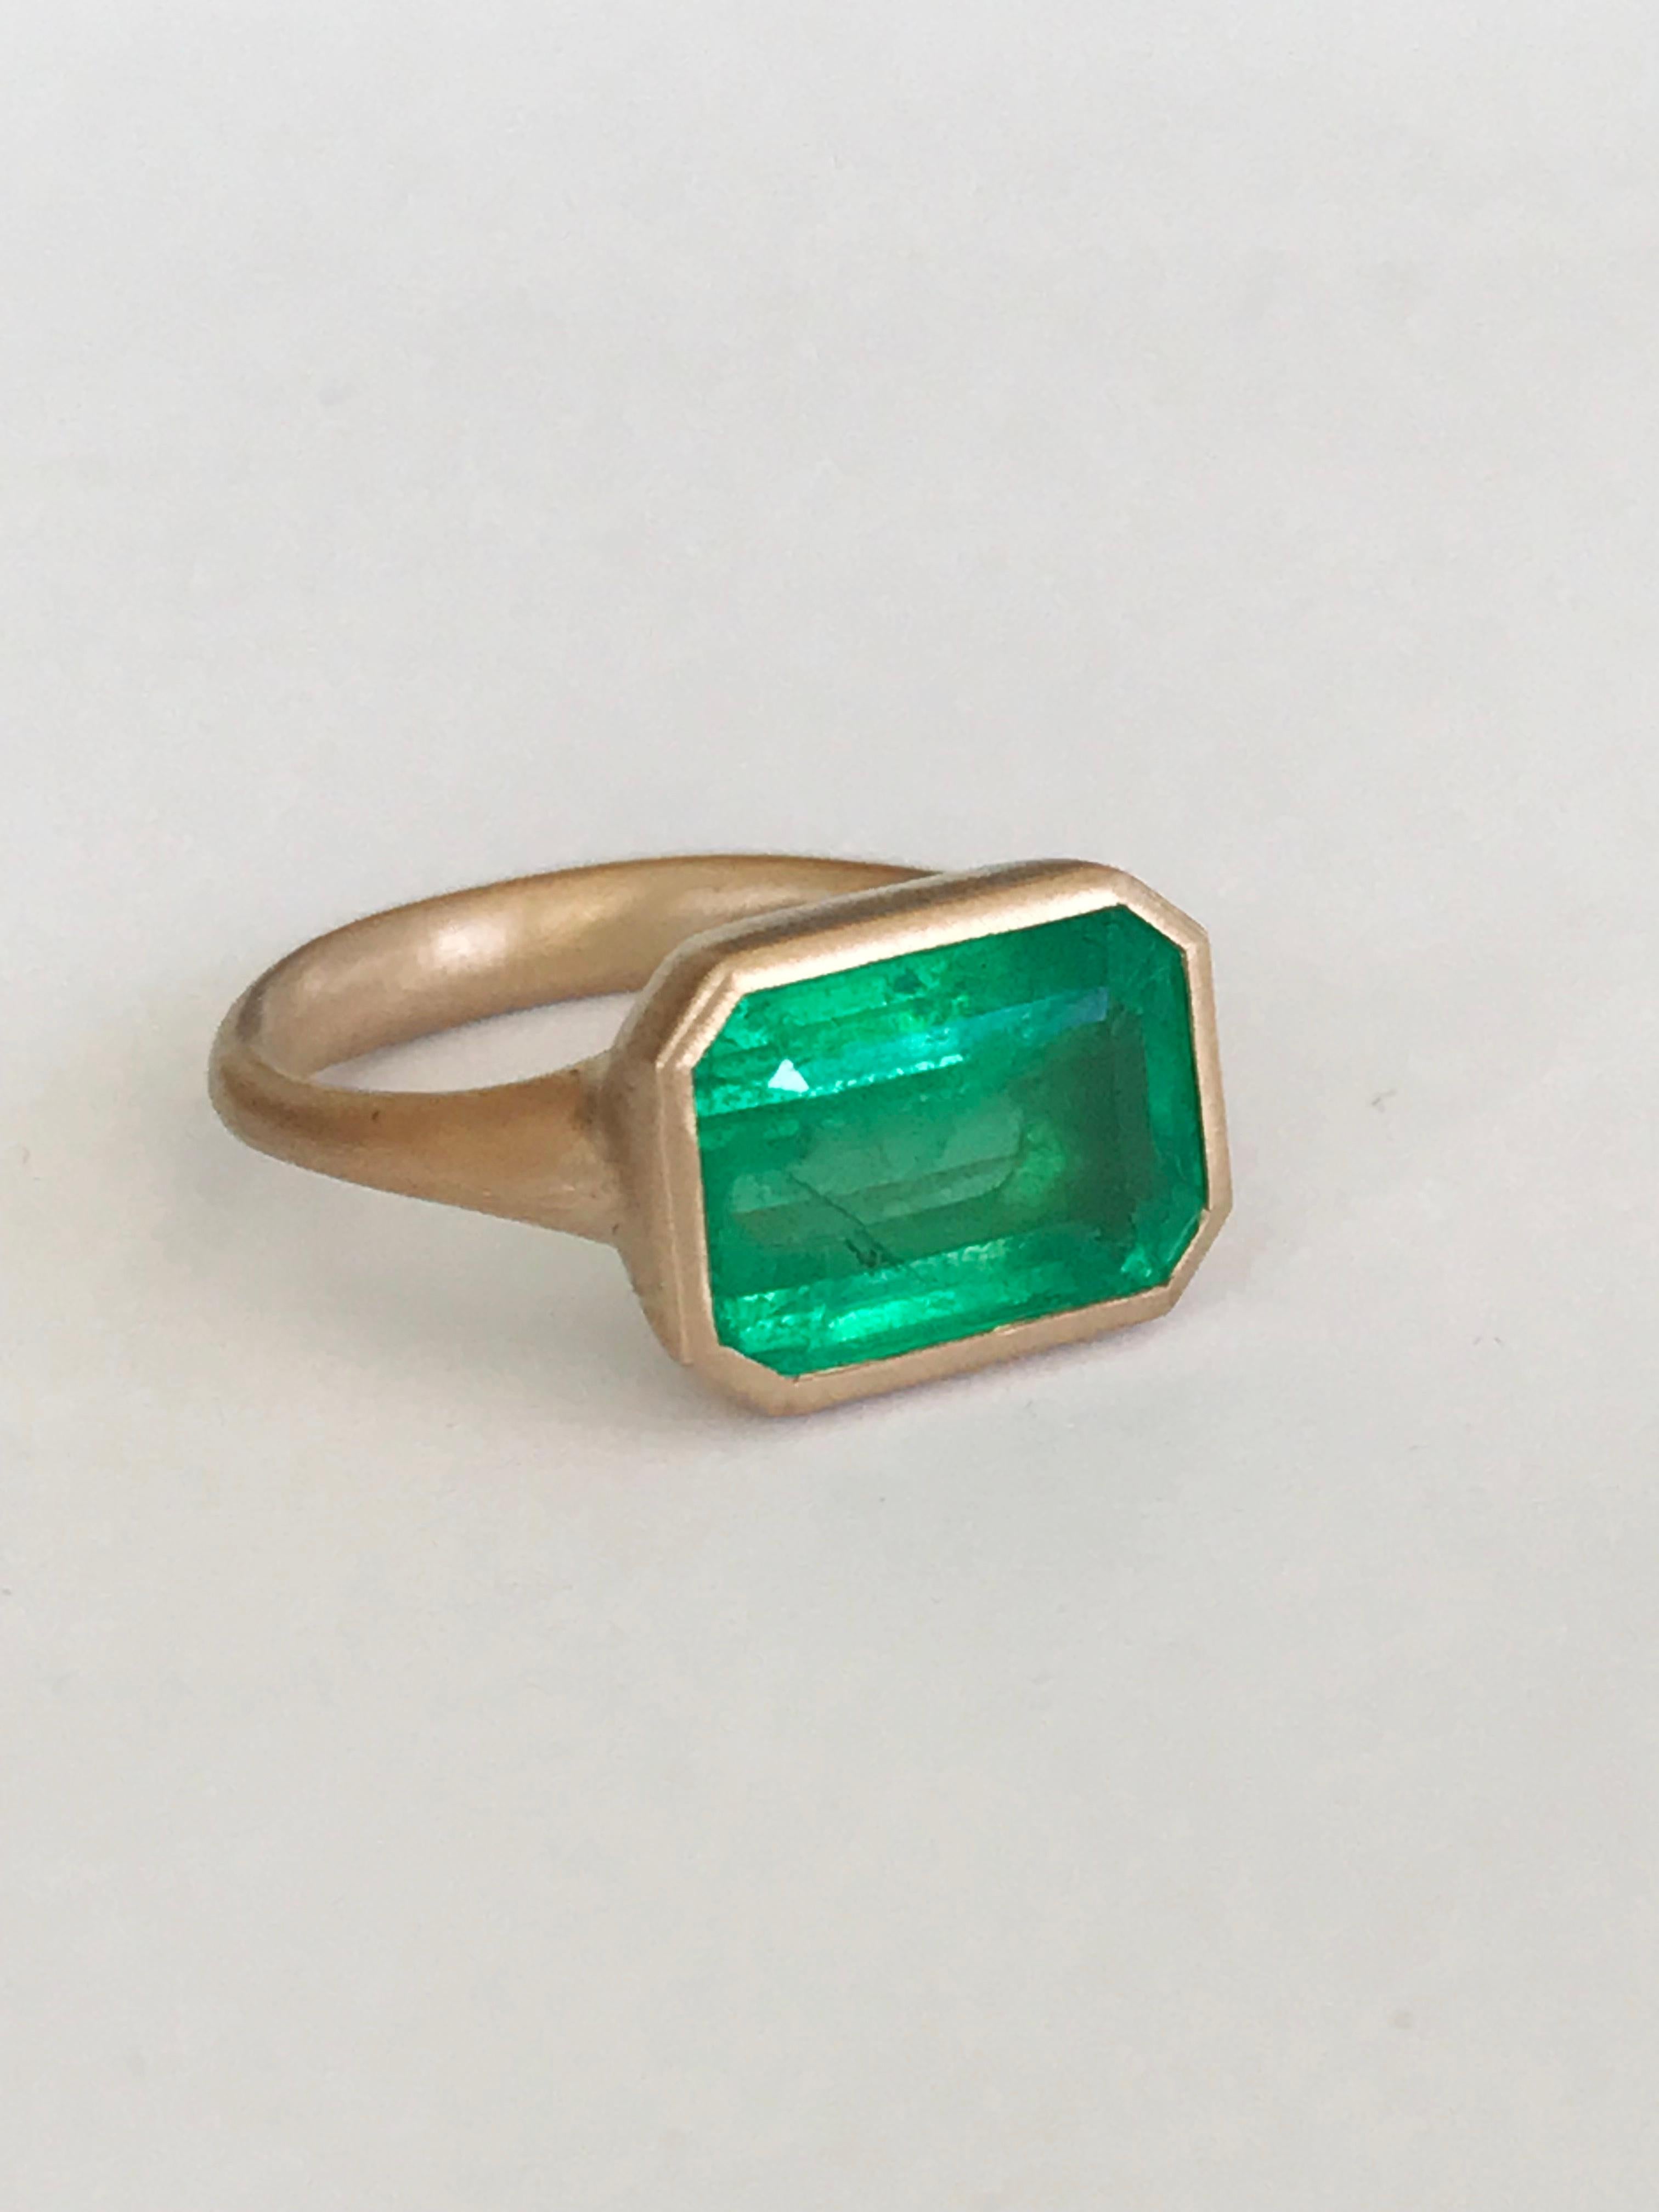 Dalben Design One of a Kind Ring aus 18k Roségold mit einem 5,1 Karat Smaragd in Lünettenfassung. 
Ring Größe 7 1/4  USA - EU 55 mit Größenanpassung an die meisten Fingergrößen. 
Lünette Stein Abmessungen :
Breite 13,4 mm
Höhe 10,3 mm
Der Ring wurde